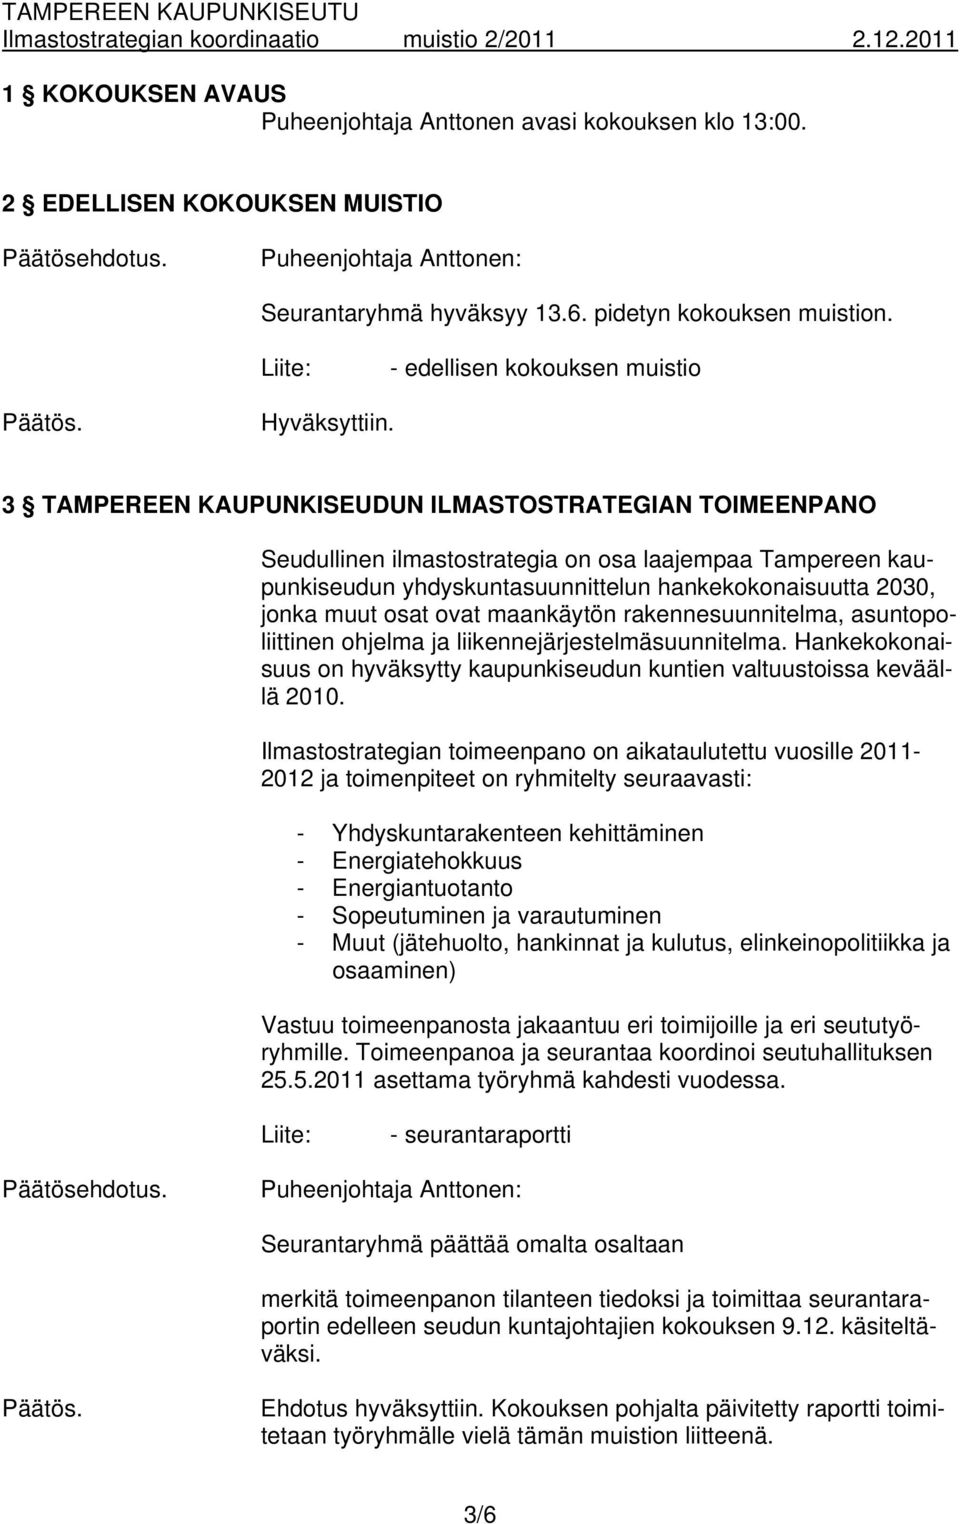 3 TAMPEREEN KAUPUNKISEUDUN ILMASTOSTRATEGIAN TOIMEENPANO Seudullinen ilmastostrategia on osa laajempaa Tampereen kaupunkiseudun yhdyskuntasuunnittelun hankekokonaisuutta 2030, jonka muut osat ovat